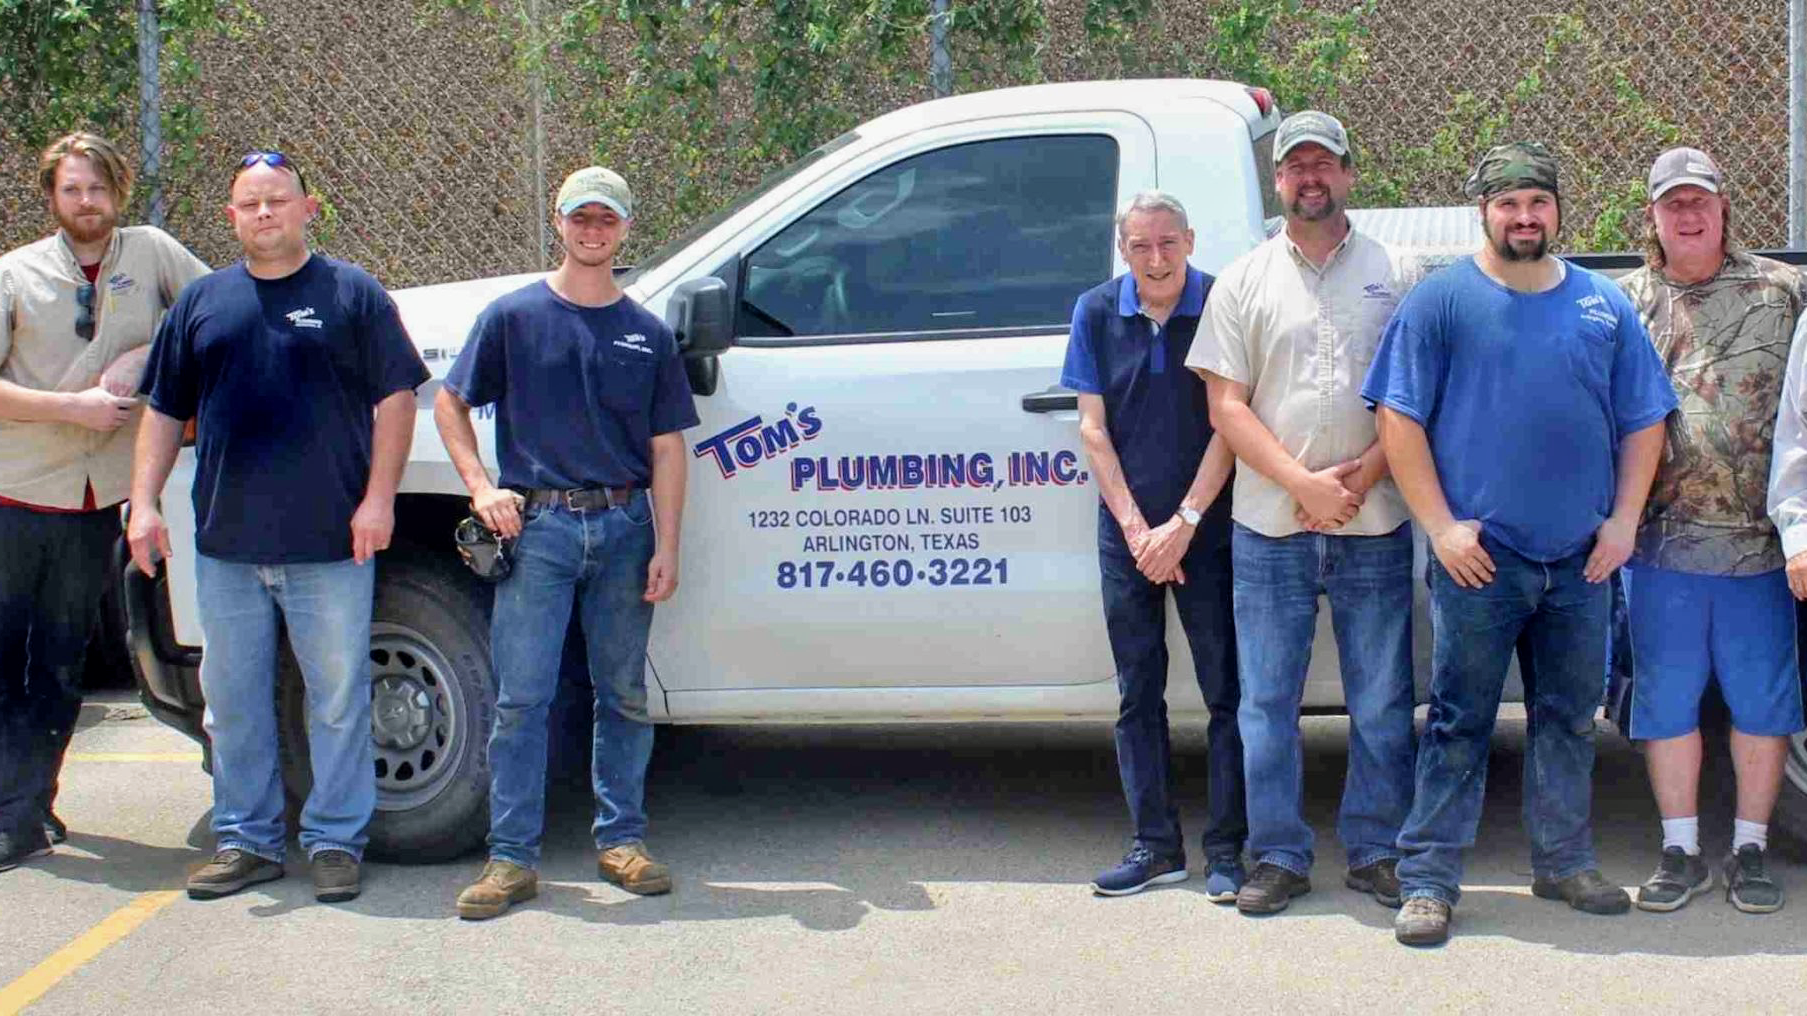 Tom's Plumbing, Inc